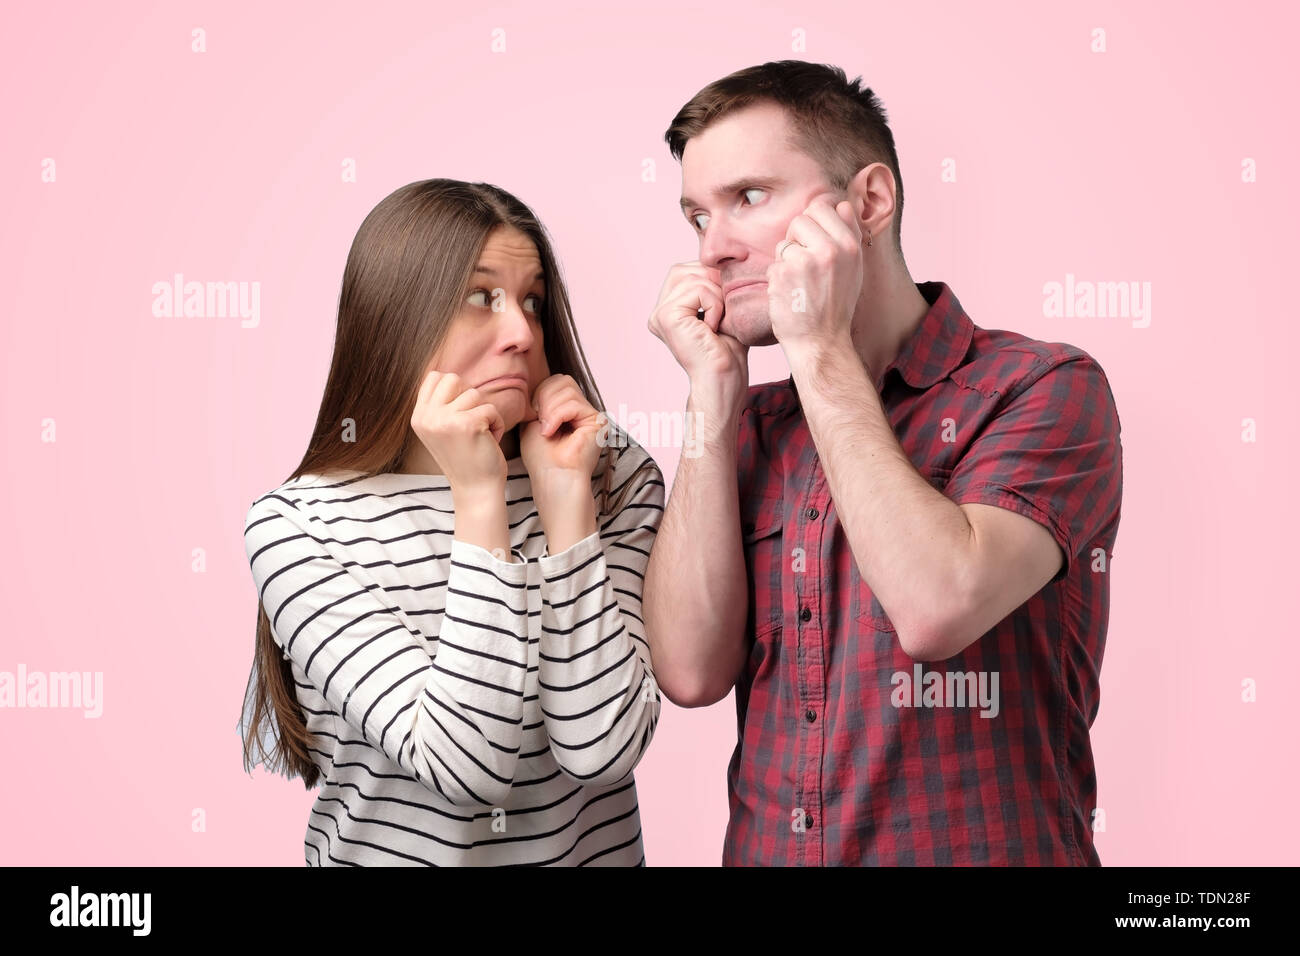 Drôle jeune couple qui s'étend sur la peau des joues étrange grimace Banque D'Images